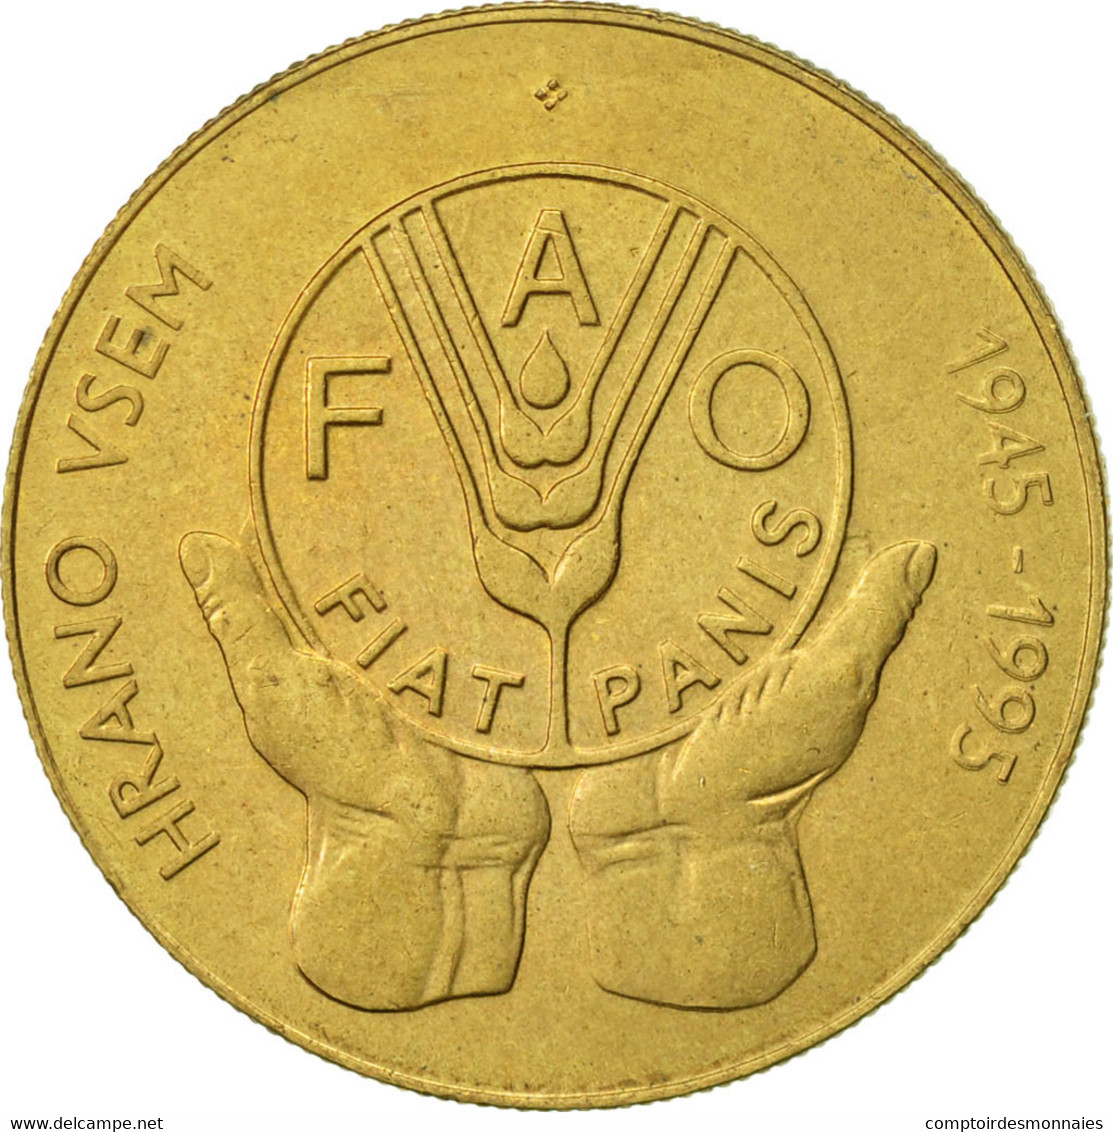 Monnaie, Slovénie, 5 Tolarjev, 1995, TTB+, Nickel-brass, KM:21 - Slovenia